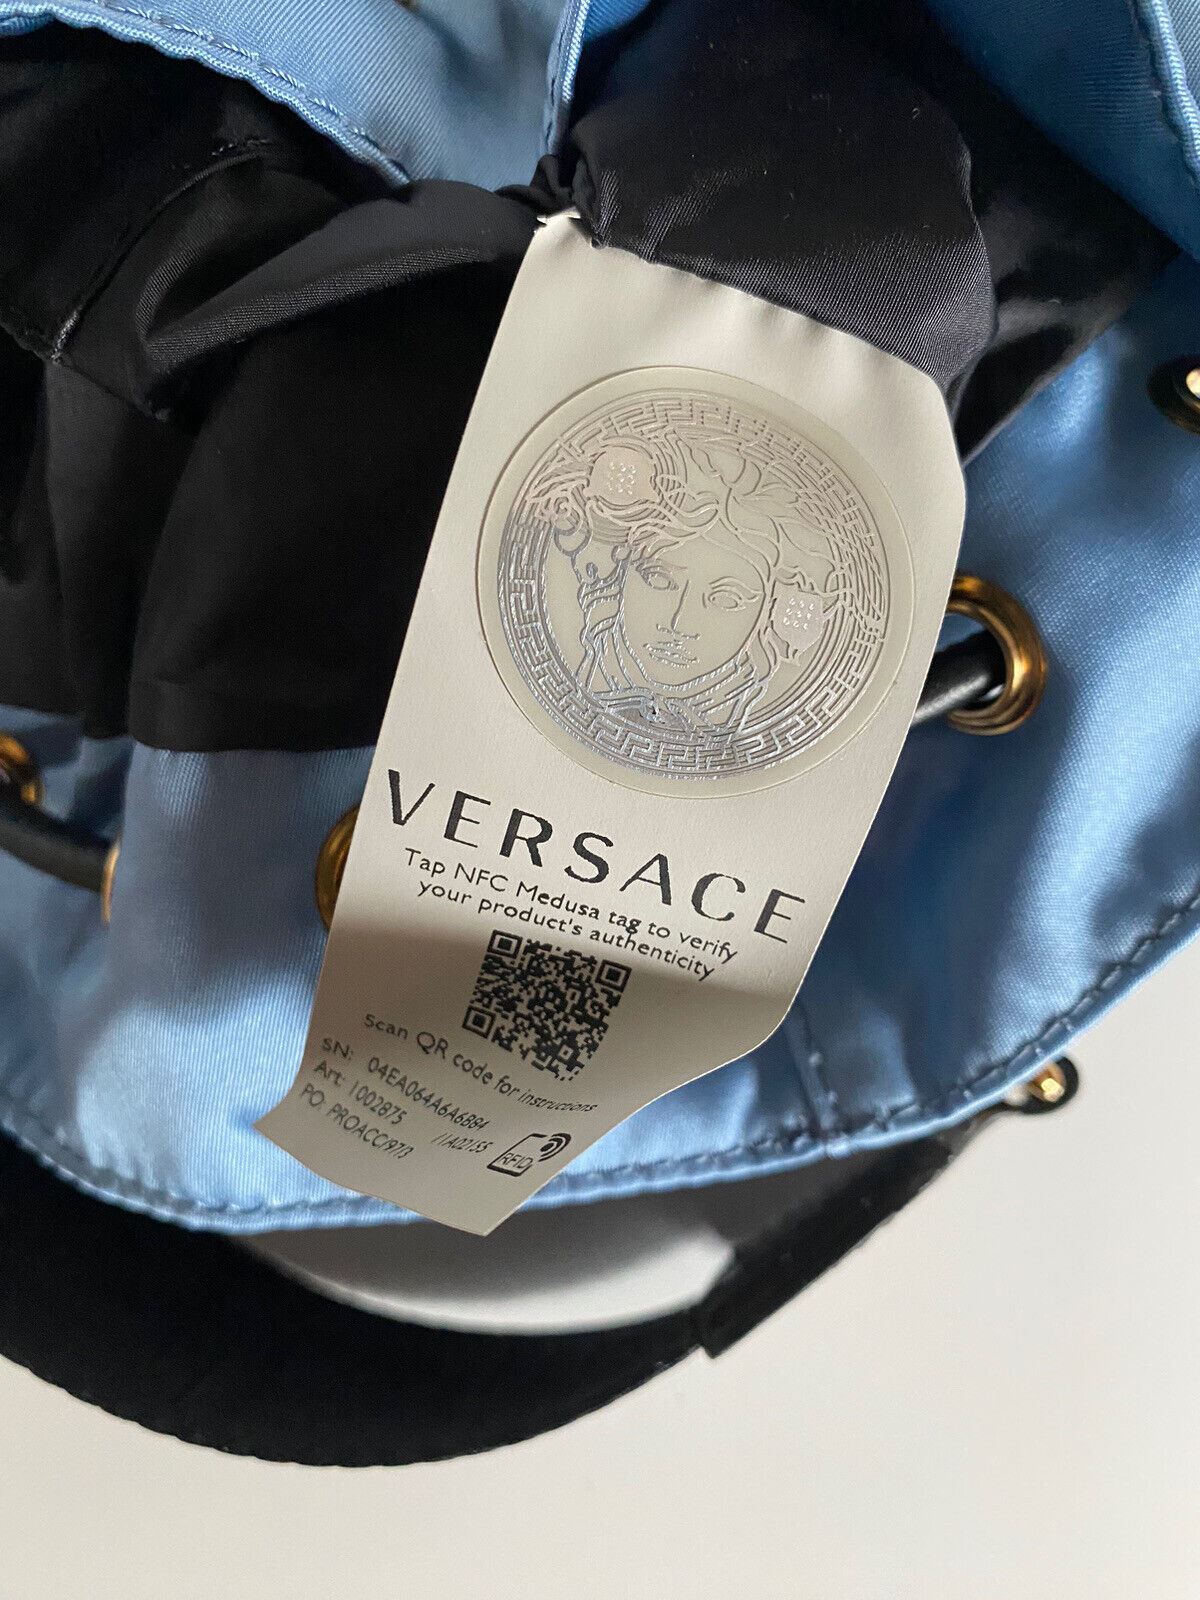 Neu mit Etikett: Versace Mini-Rucksack aus Nylon/Leder in Kornblumenblau, Italien 1002875 1A02155 